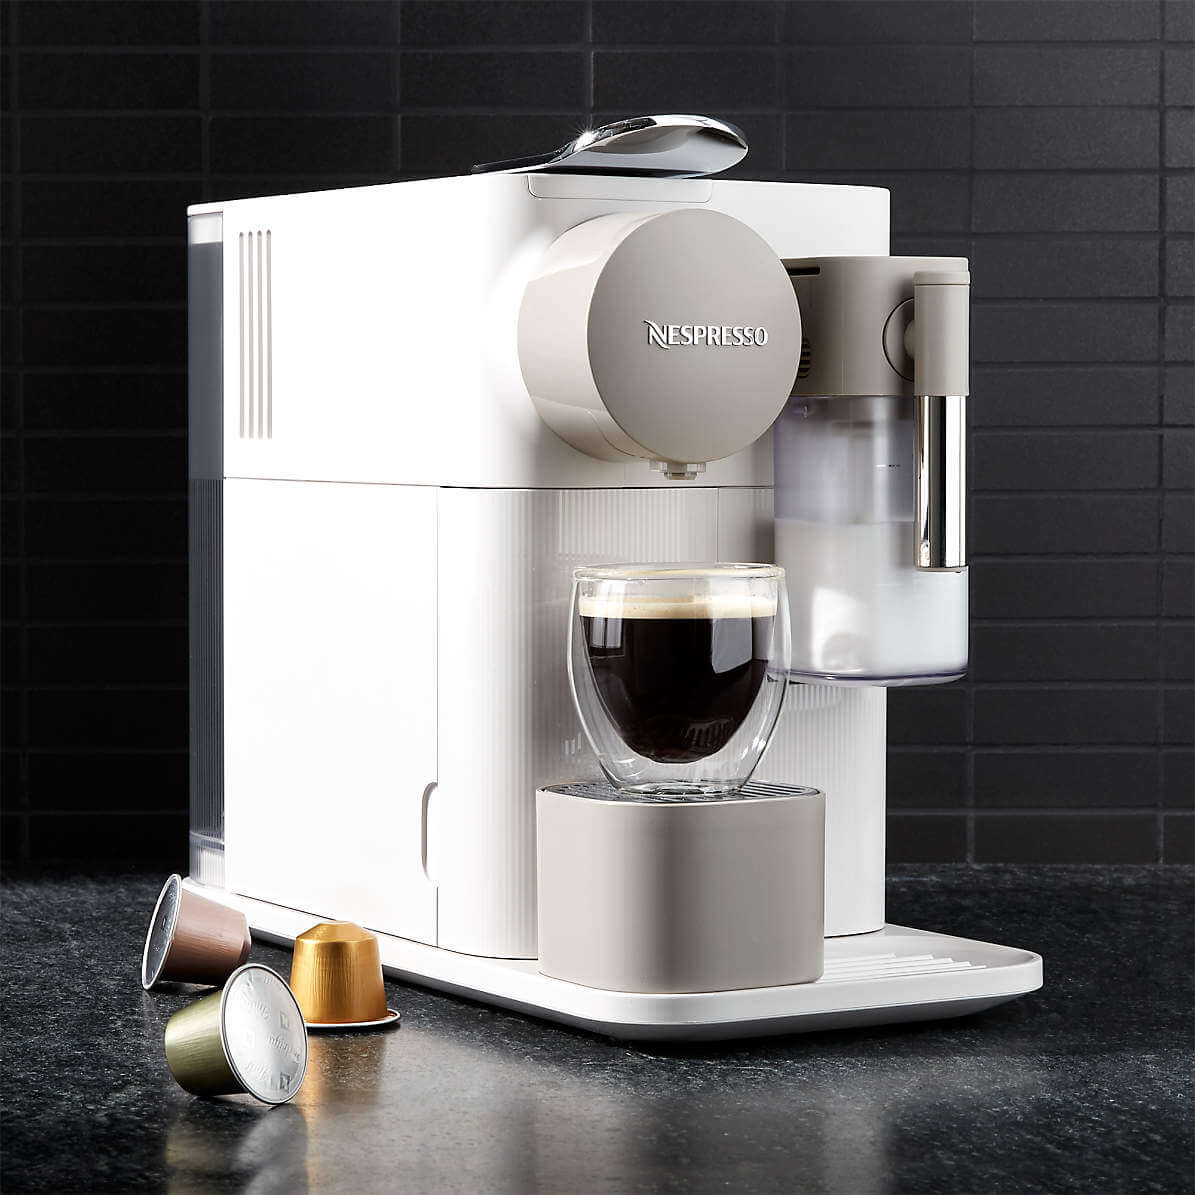 Cách sử dụng máy pha cà phê Nespresso để pha cà phê Espresso